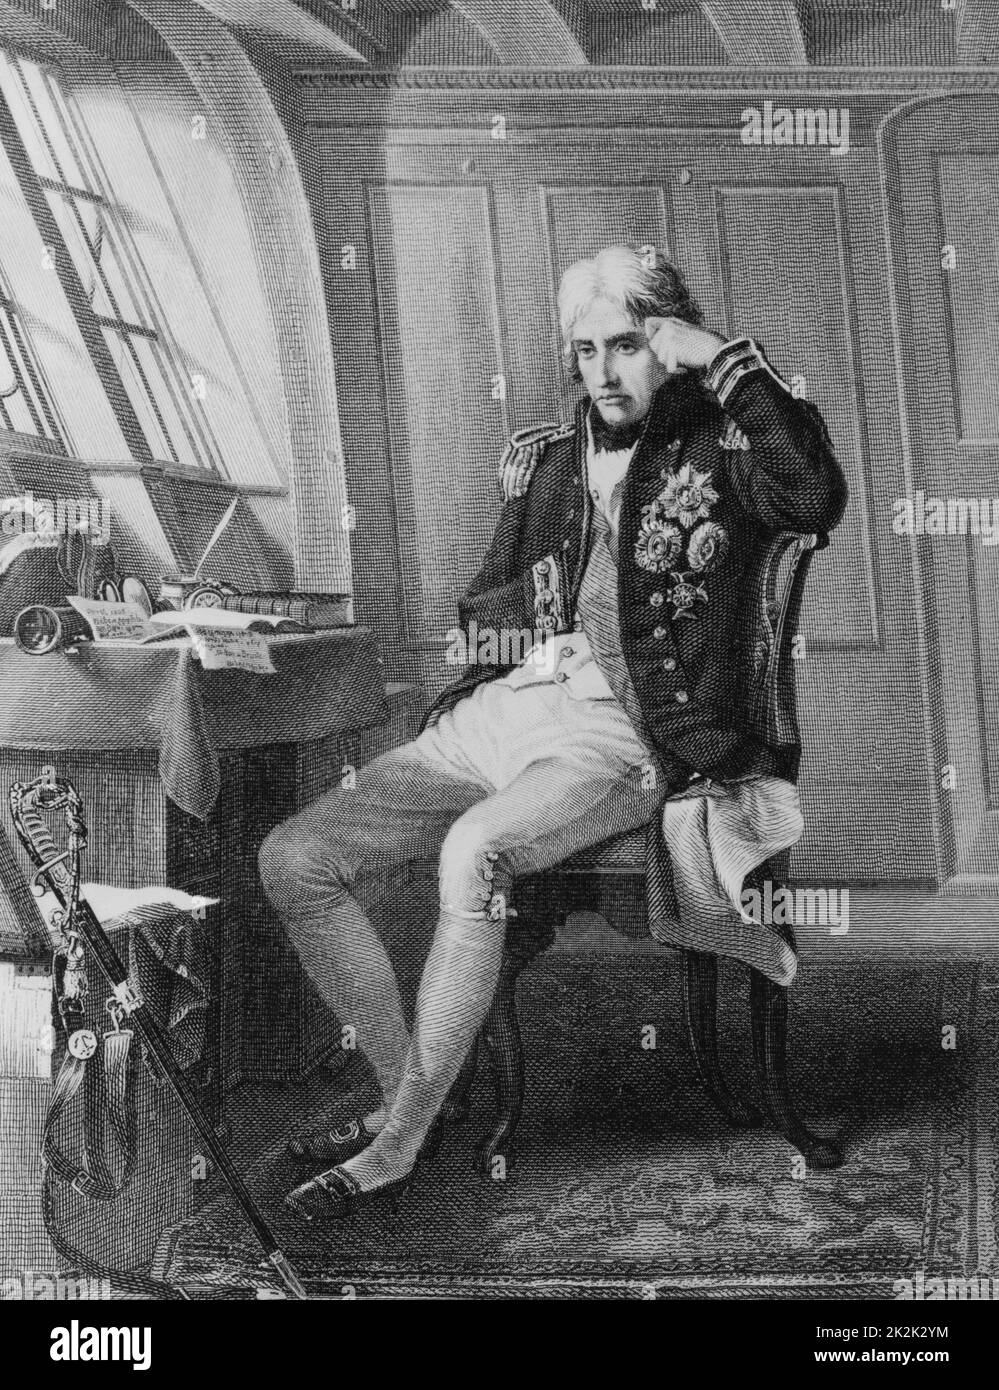 Vicealmirante británico Horatio Nelson, oficial de la Marina Real. Grabado fechado en 1873 Foto de stock